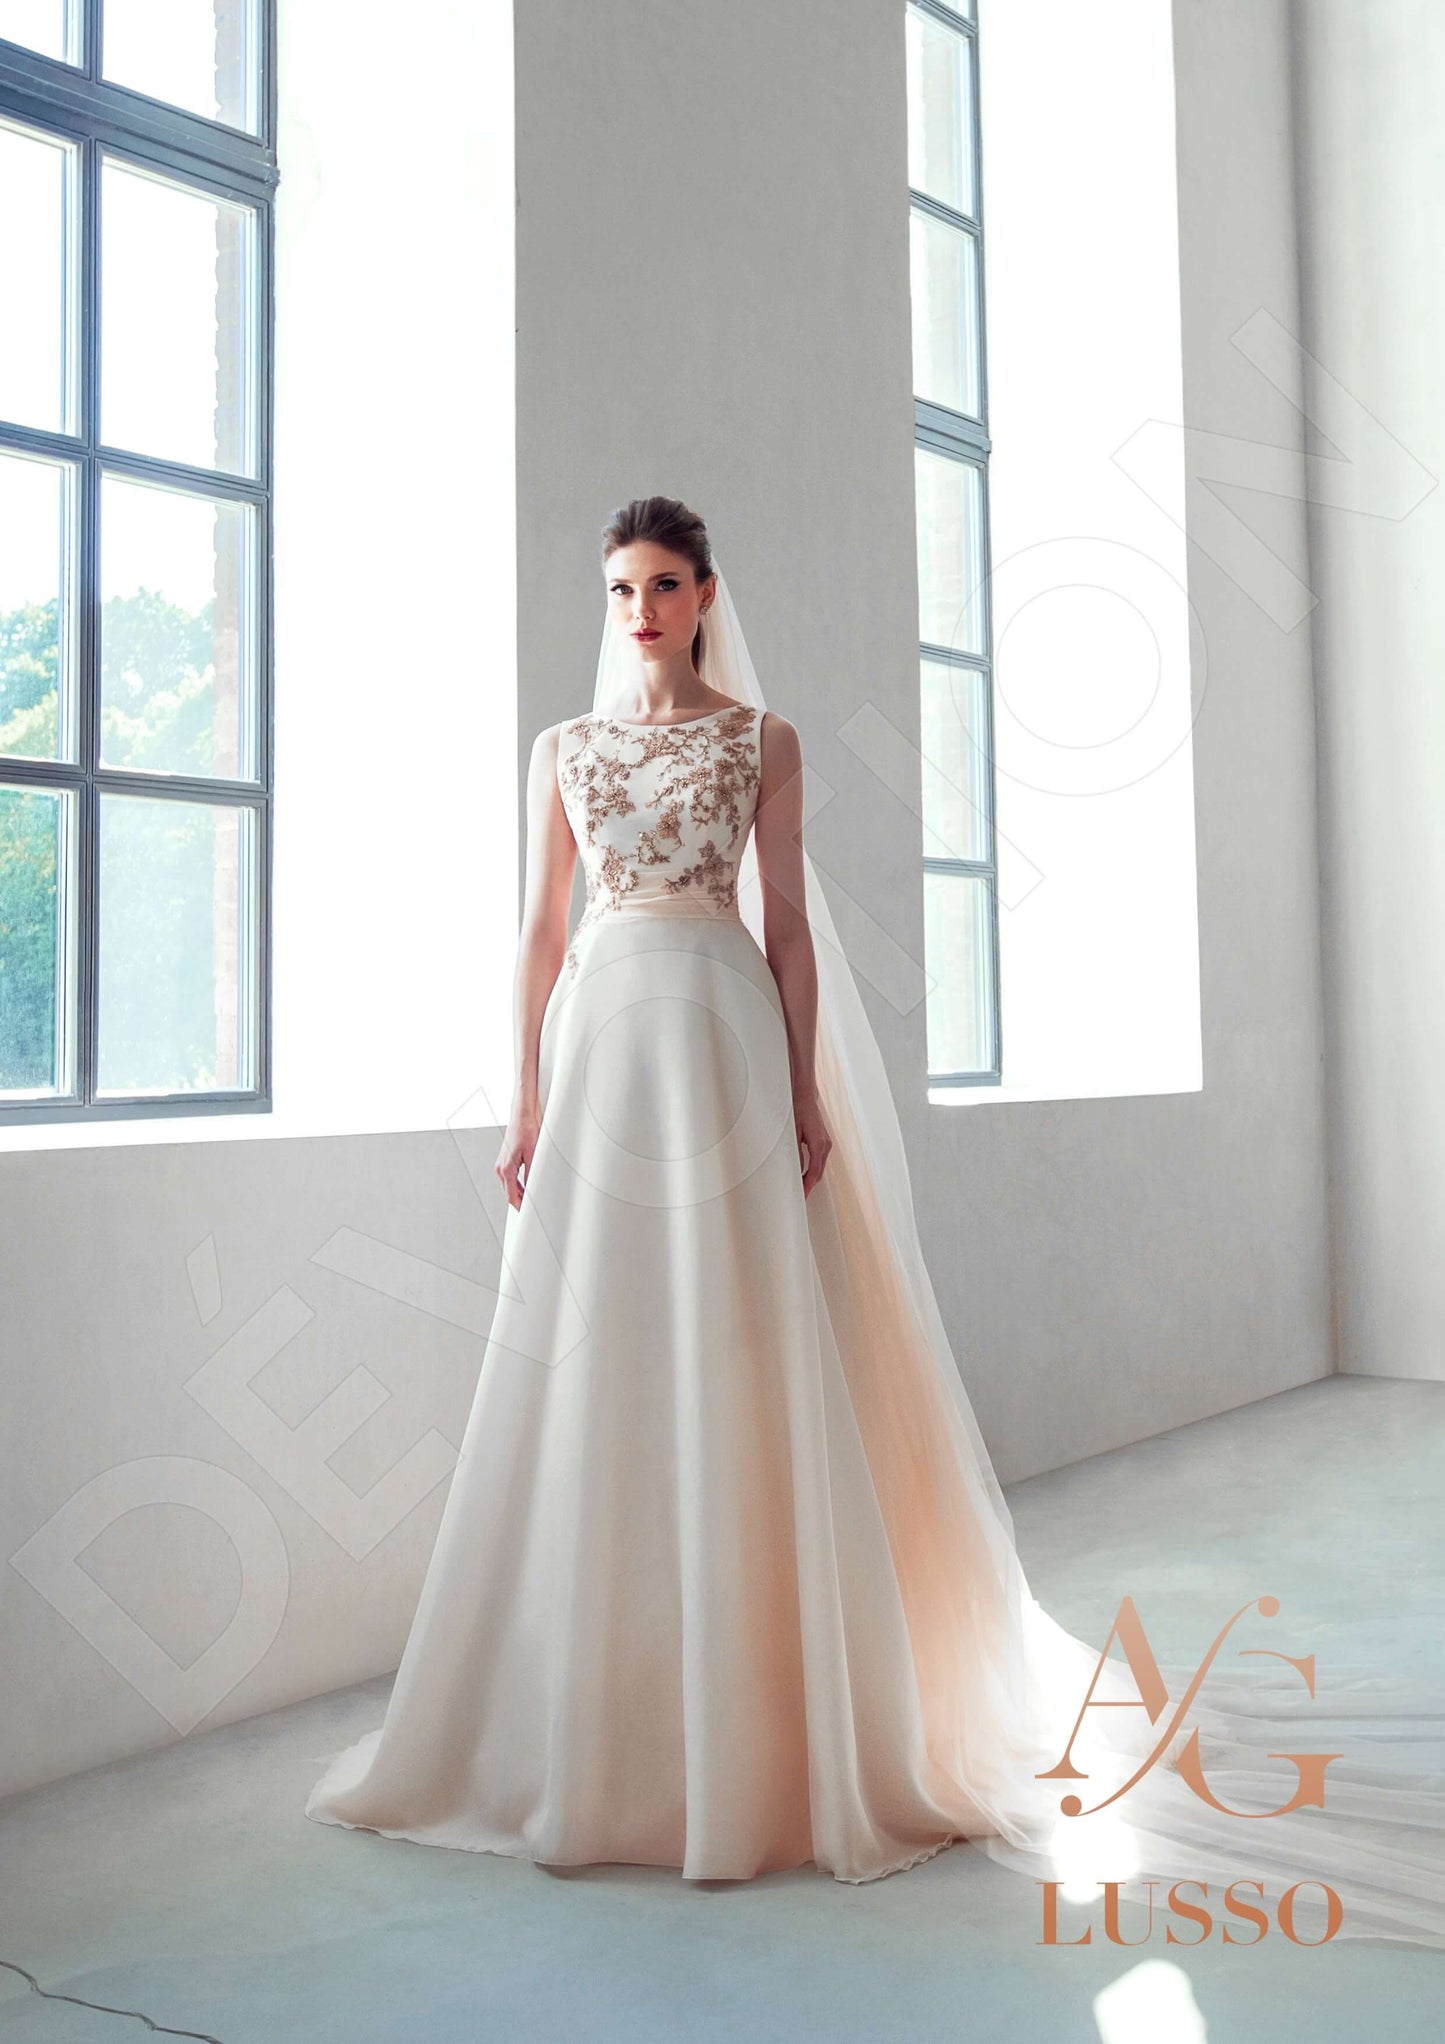 Hailey Open back A-line Sleeveless Wedding Dress 5